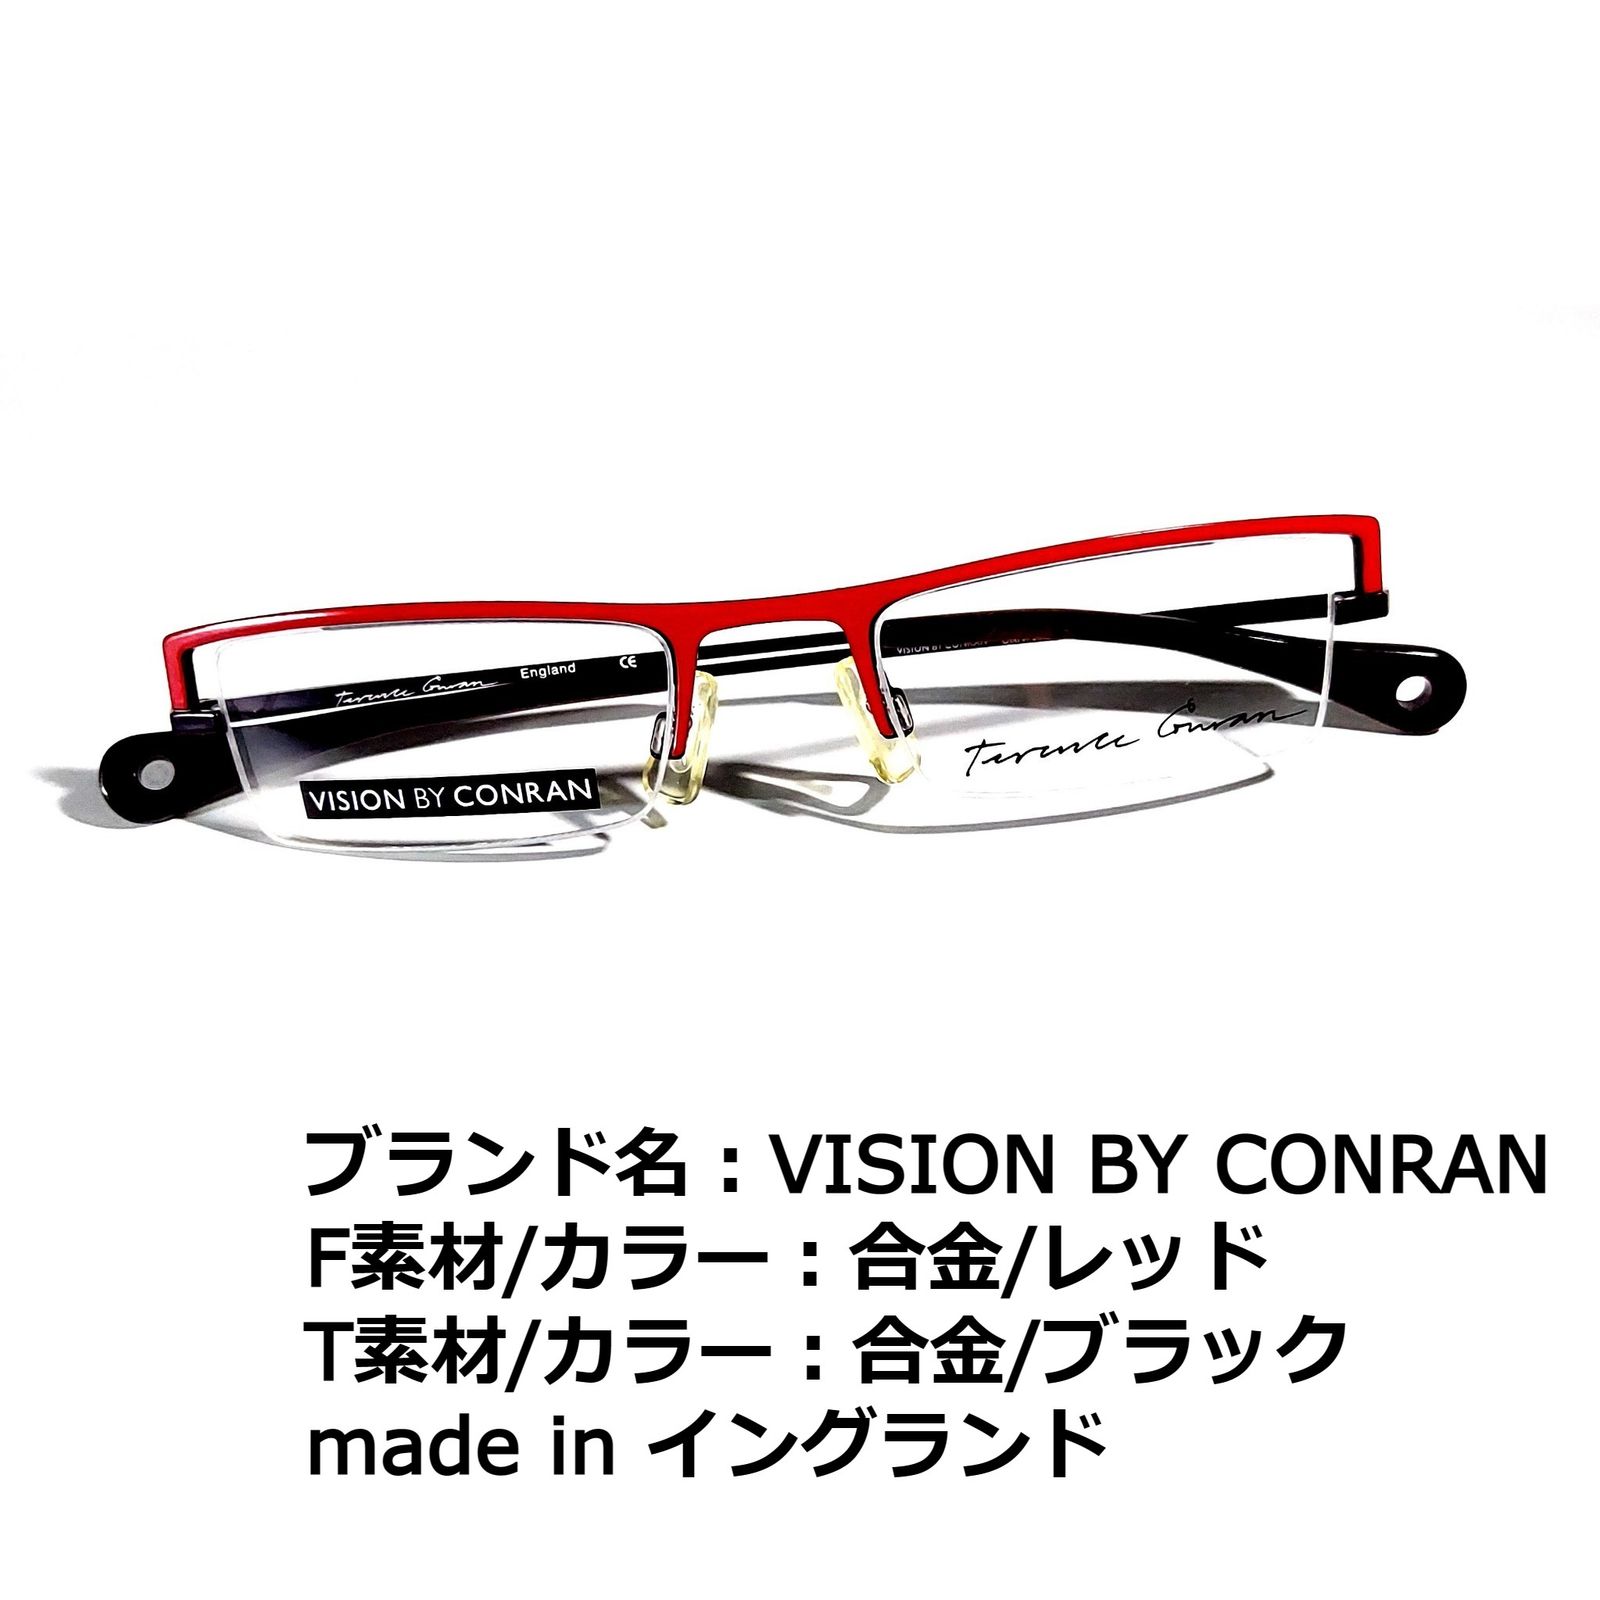 セルダークグレーブラウン素材No.1727メガネ　VISION BY CONRAN【度数入り込み価格】